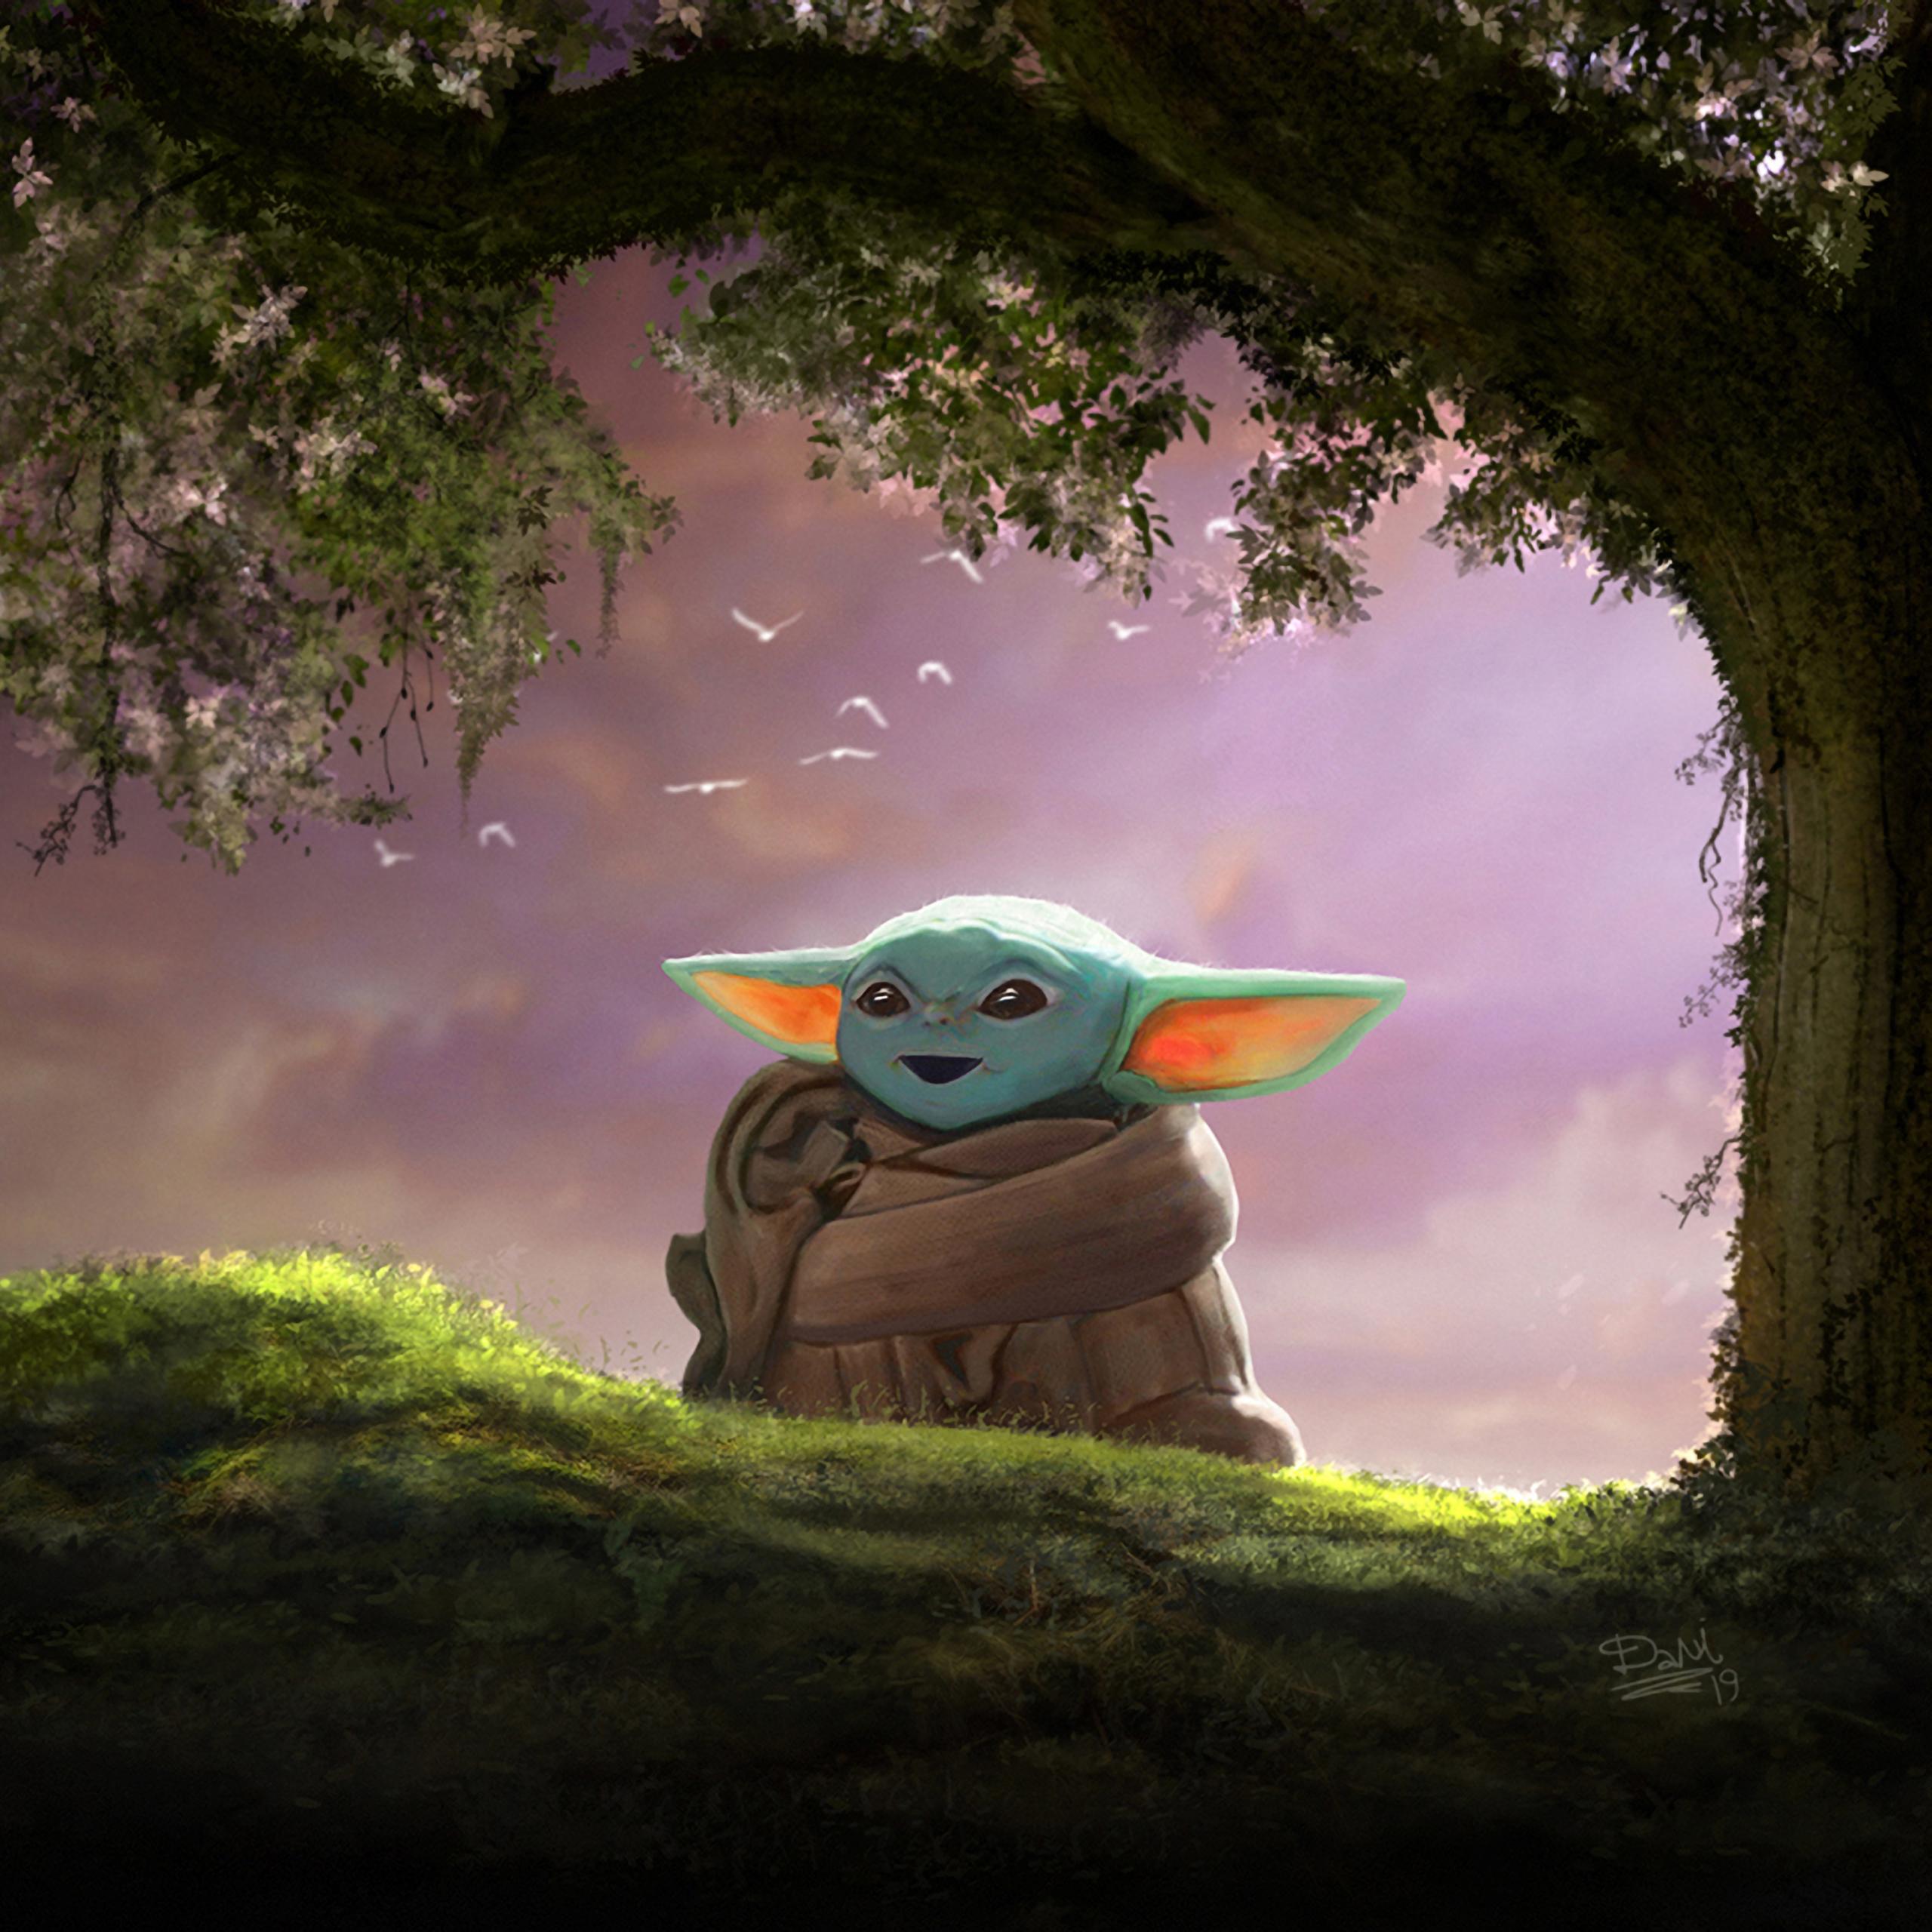 Nếu bạn thích những hình ảnh đáng yêu và ngộ nghĩnh, thì hình nền Baby Yoda chắc chắn là một sự lựa chọn hoàn hảo cho bạn. Hãy nhấn vào ảnh và cảm nhận sự tuyệt vời của Baby Yoda trên nền xanh ngọc bích.